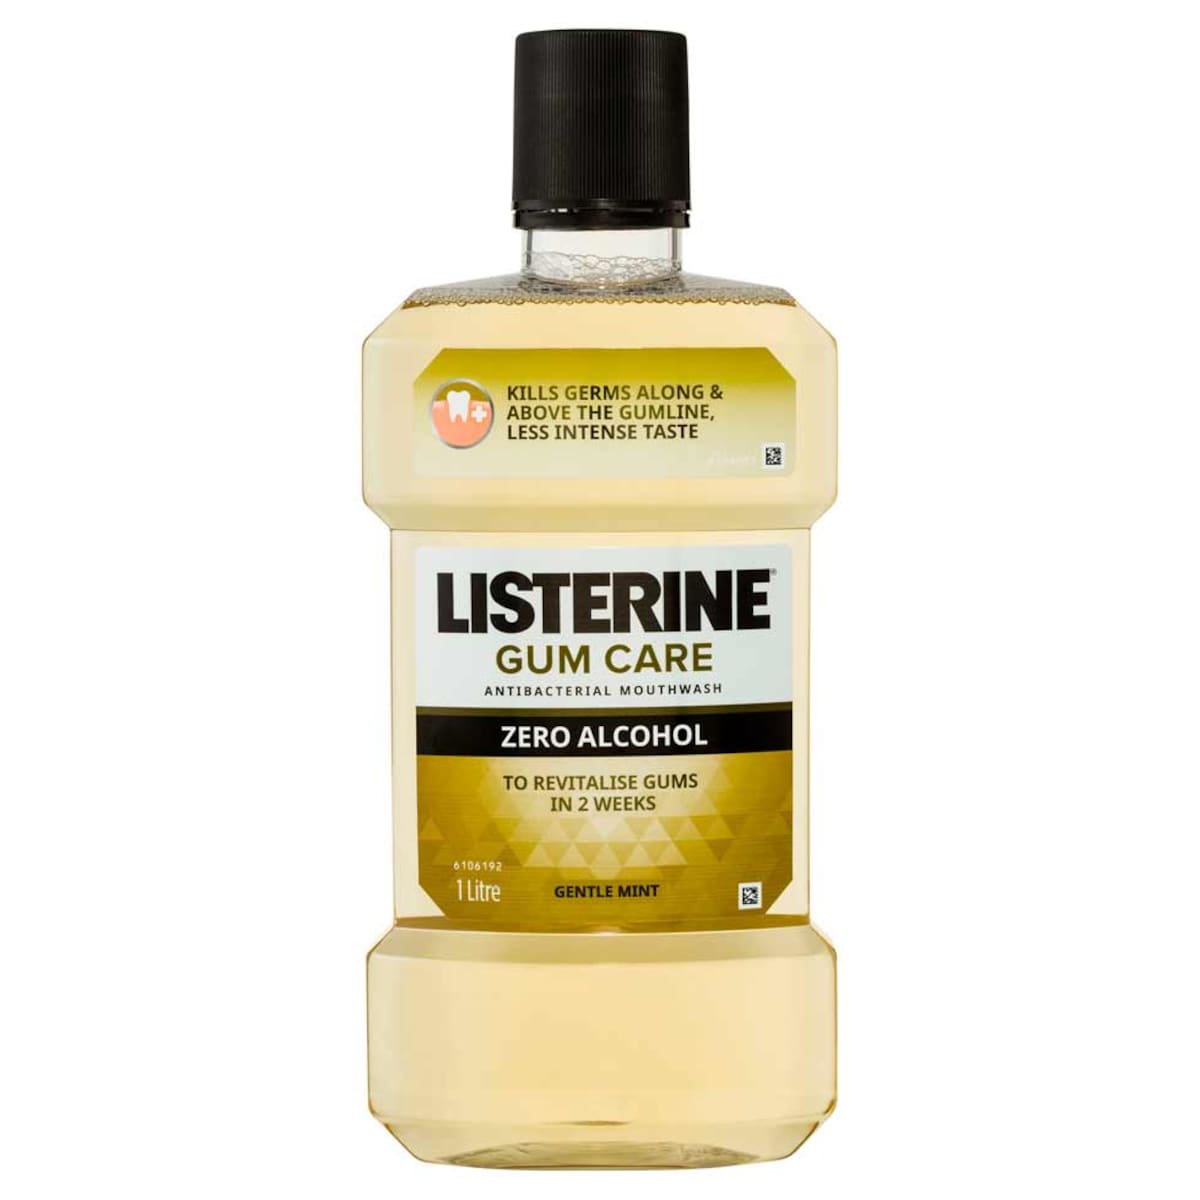 Listerine Gum Care Zero Alcohol Antibacterial Mouthwash 1 Litre